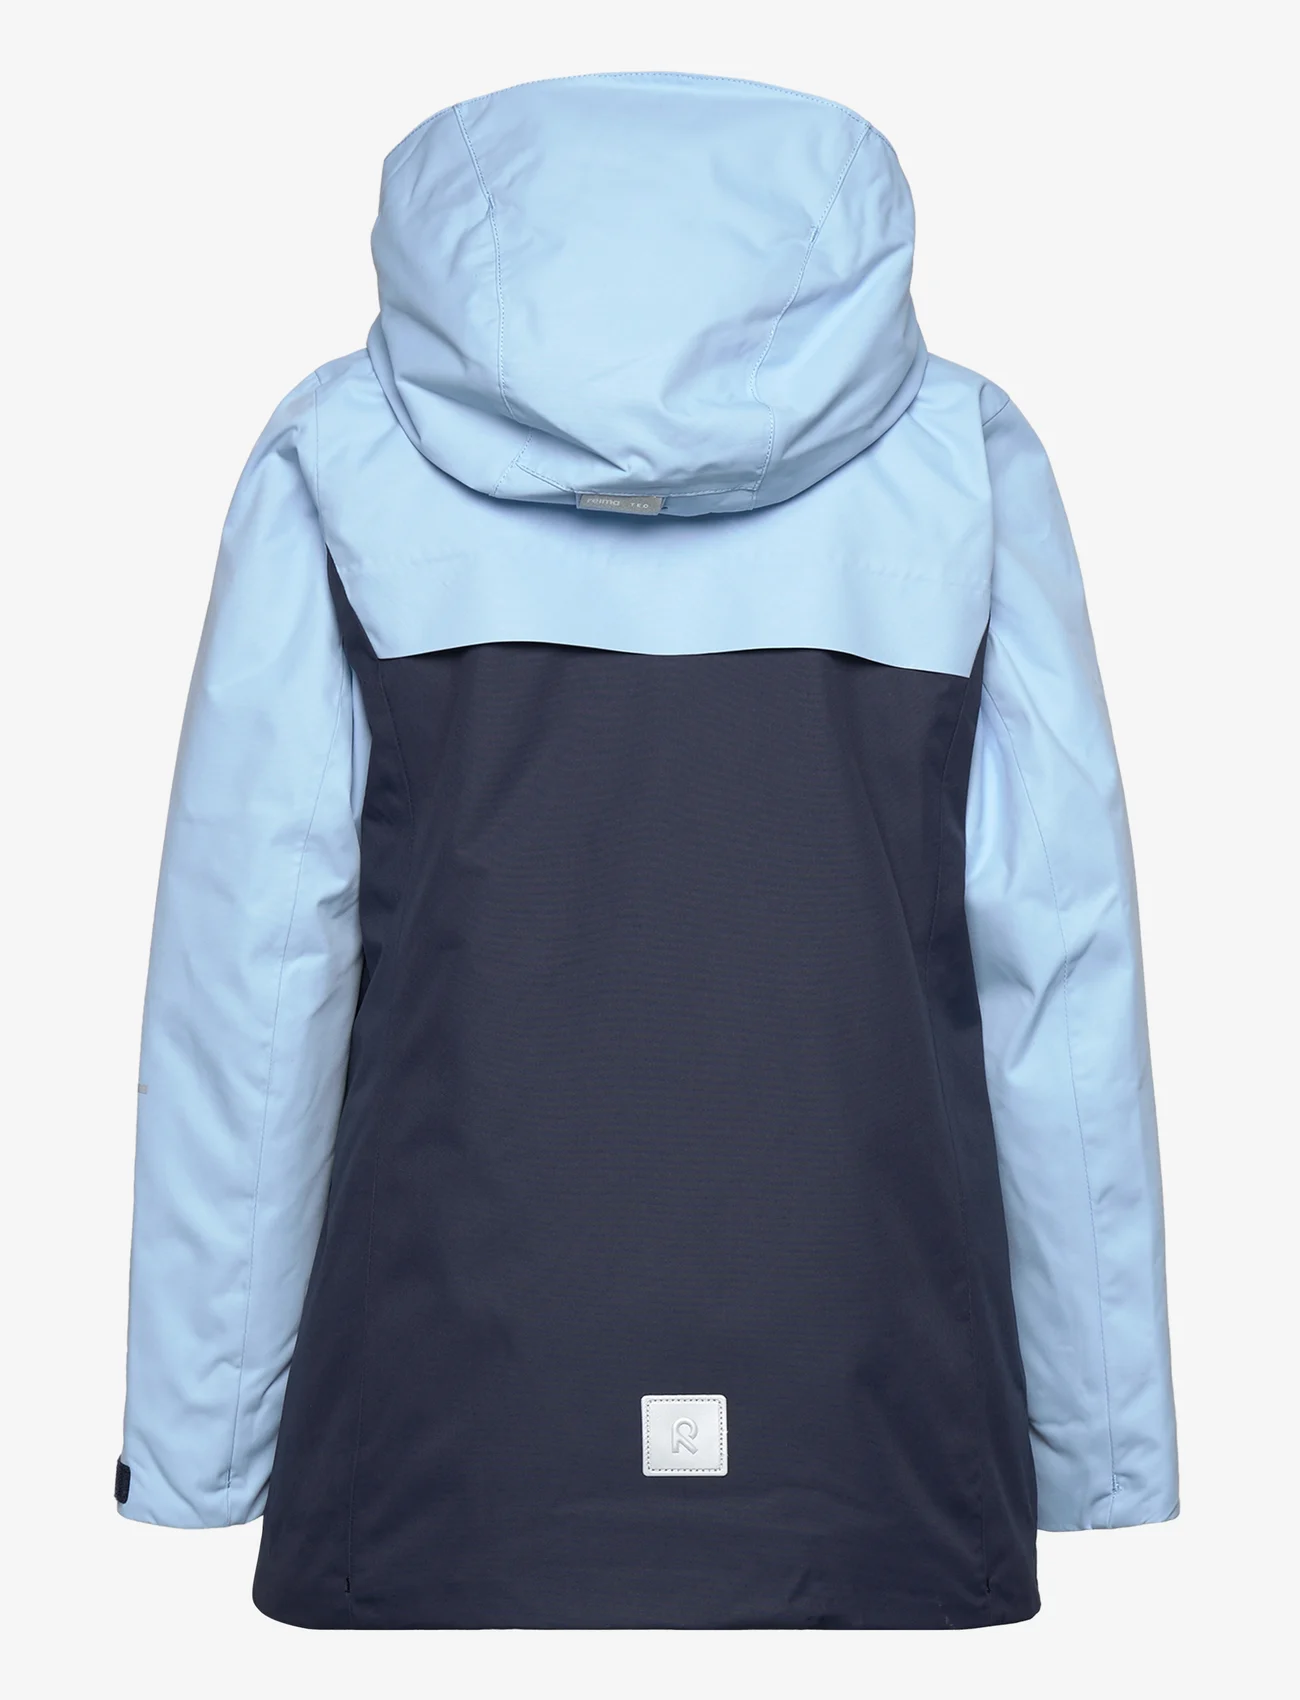 Reima - Reimatec winter jacket, Hepola - winter jackets - navy - 1